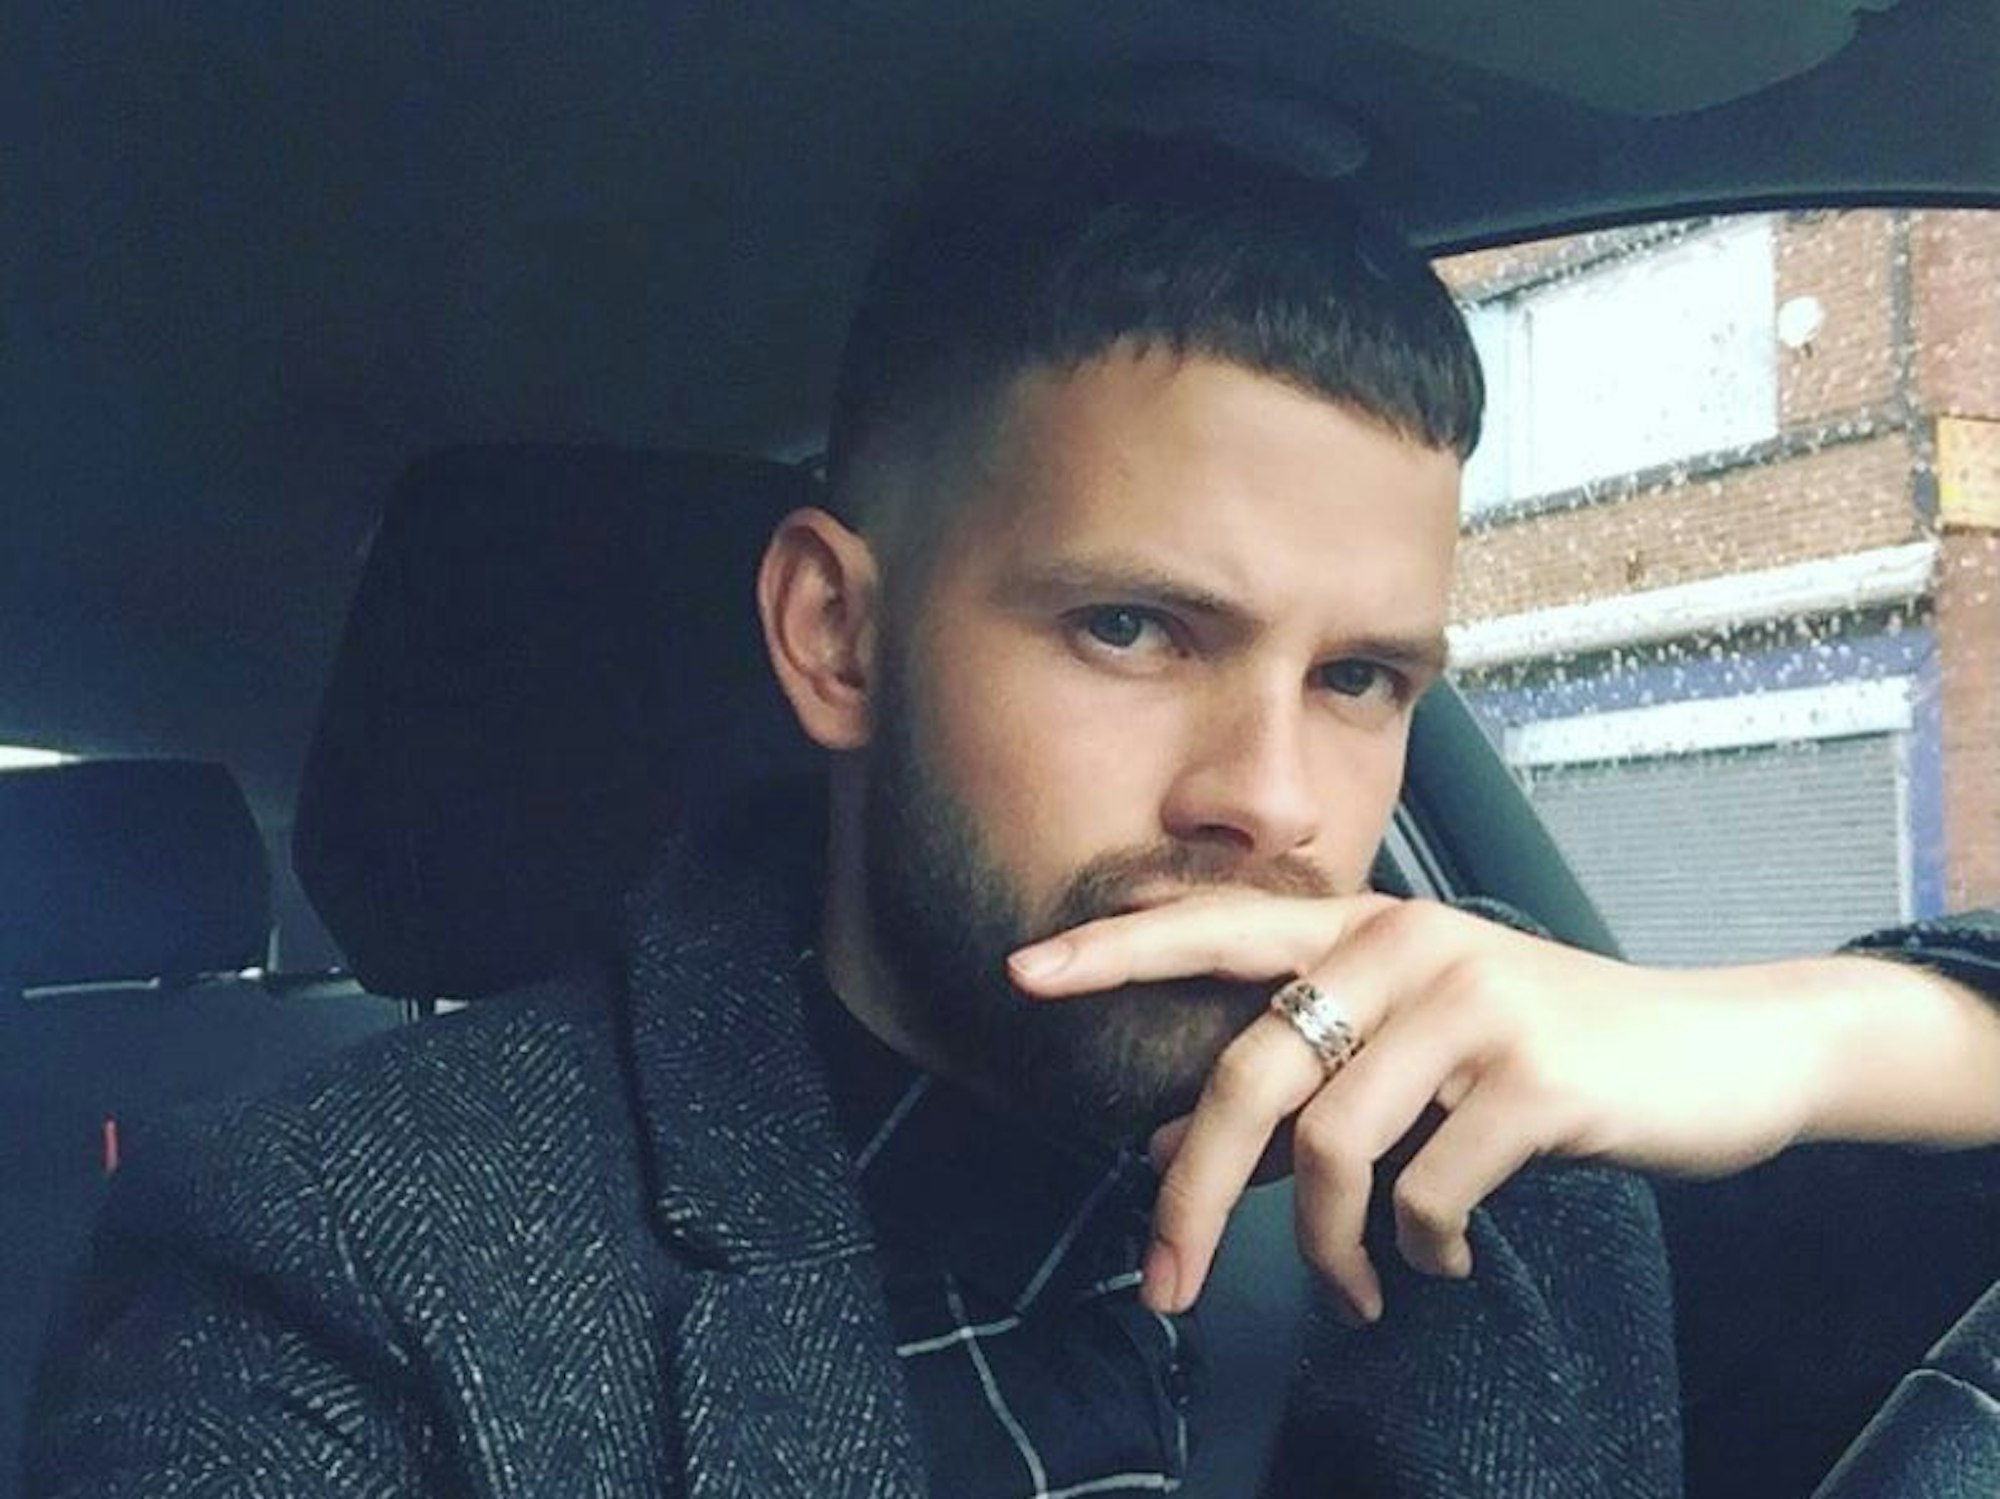 Das Selfie zeigt den ehemaligen "X-Factor"-Teilnehmer Tom Mann. Er hat es am 29. Januar 2017 auf Instagram veröffentlicht.